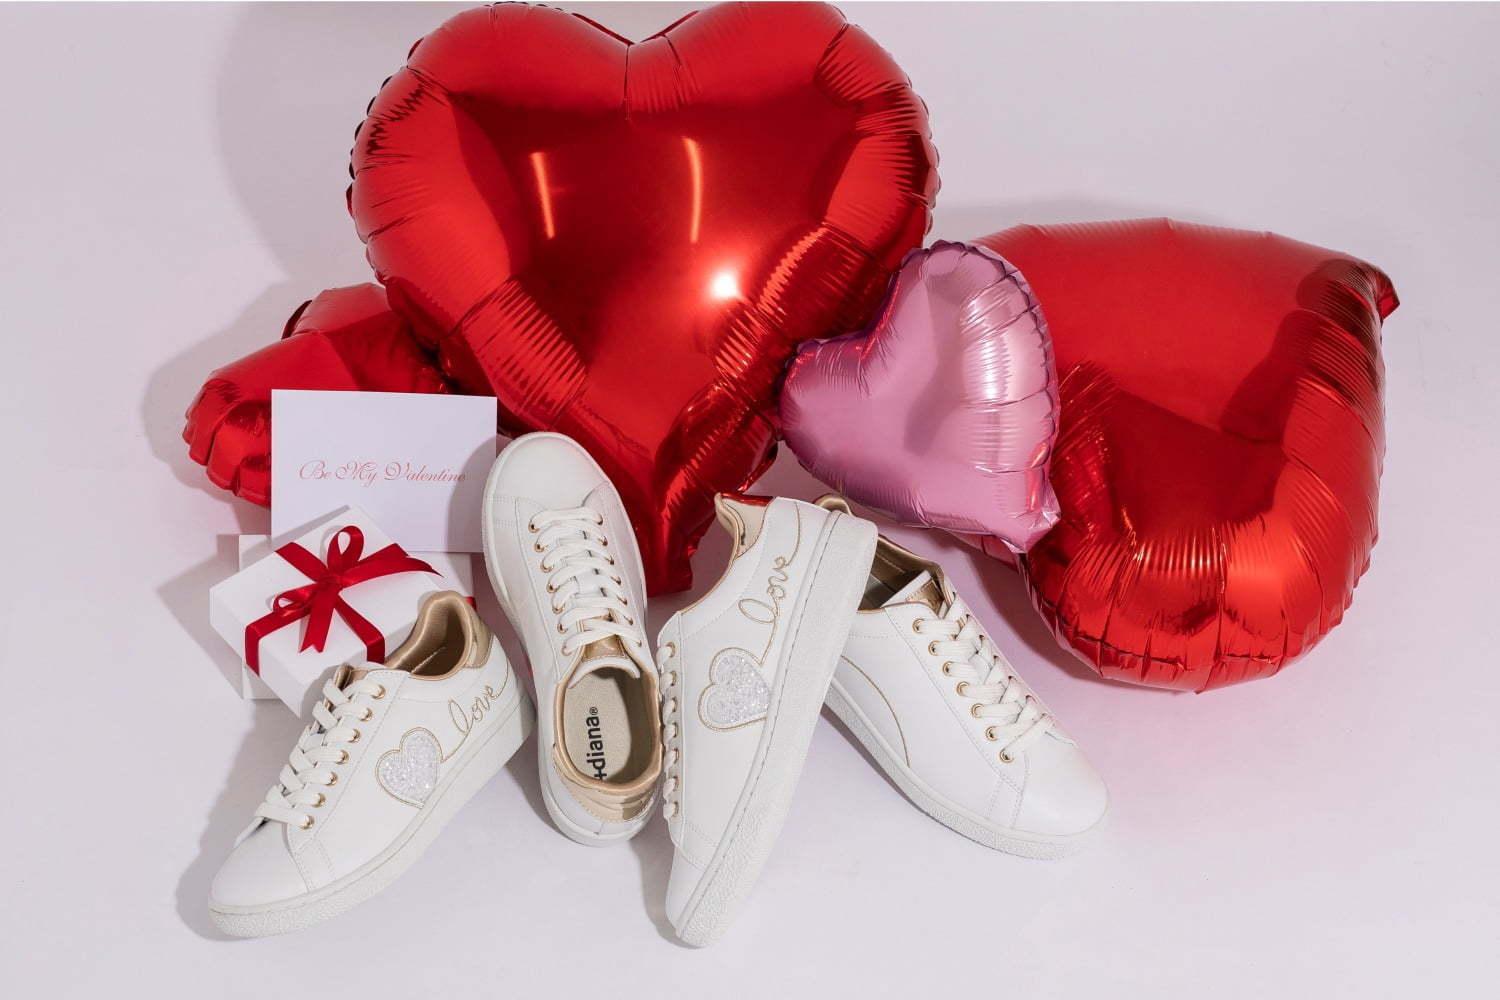 プラス ダイアナのバレンタイン限定スニーカー、キラキラハート×“love刺繍”入りの純白カラー 